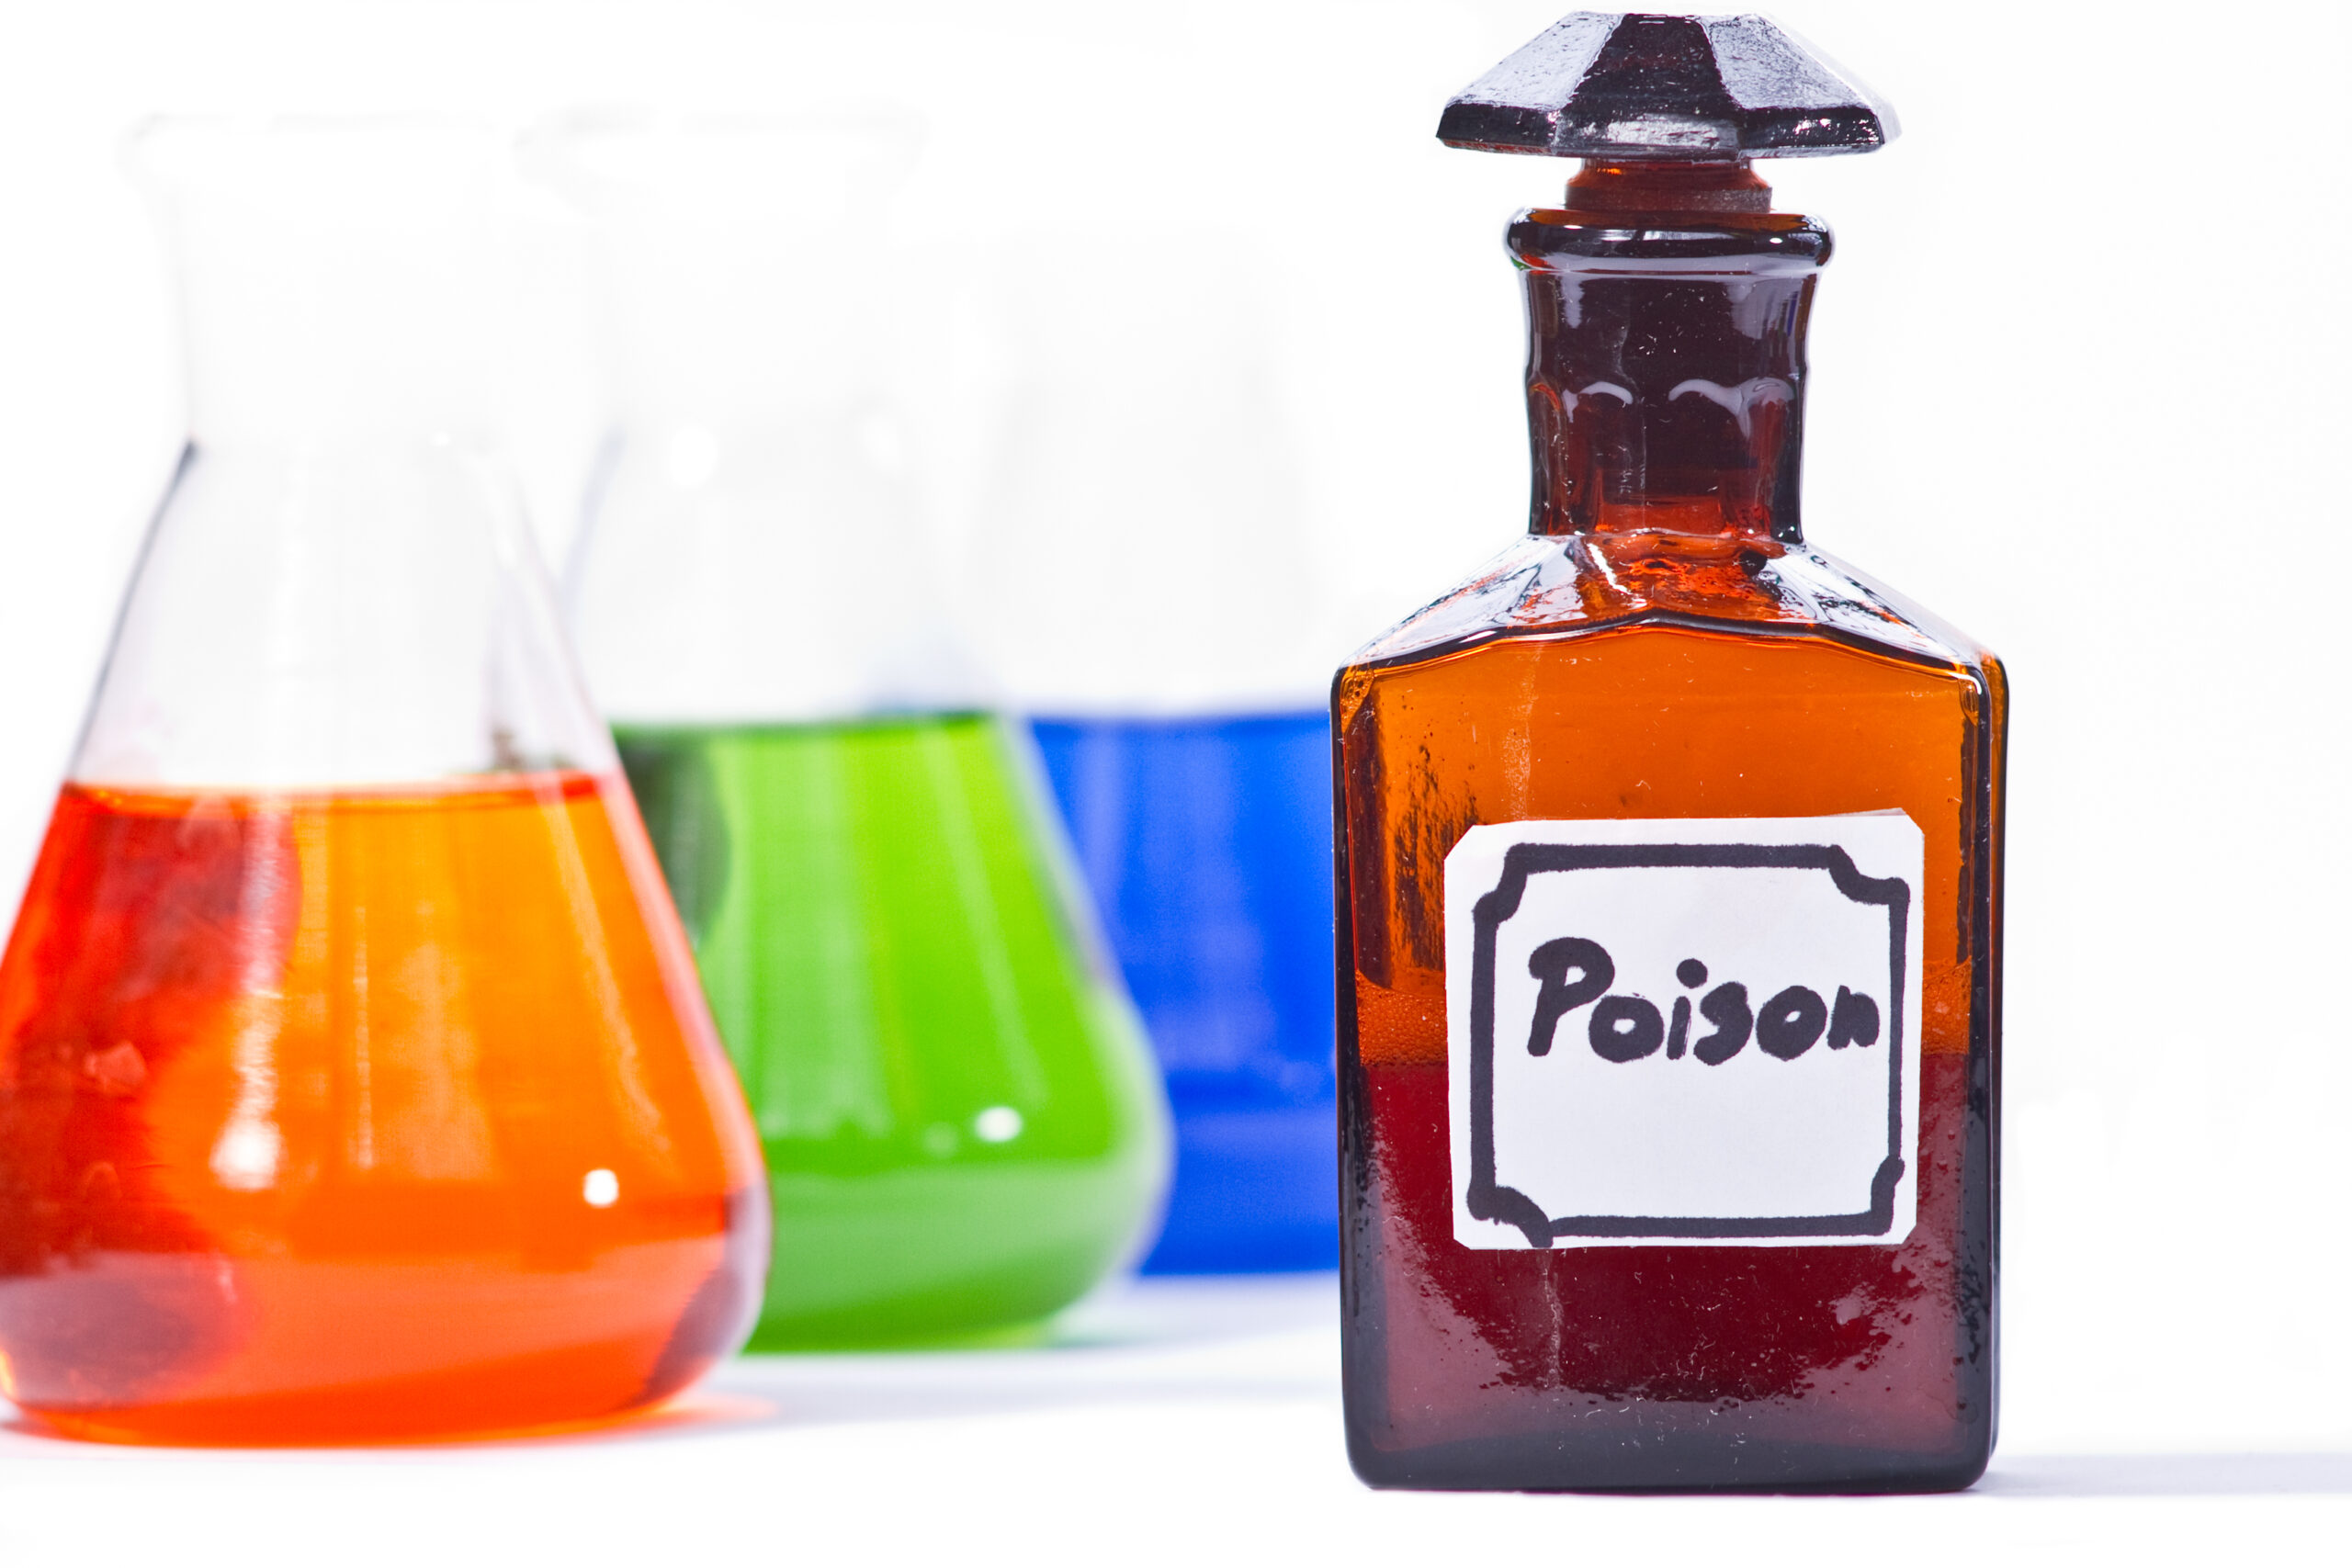 Poison dark glass bottle separated